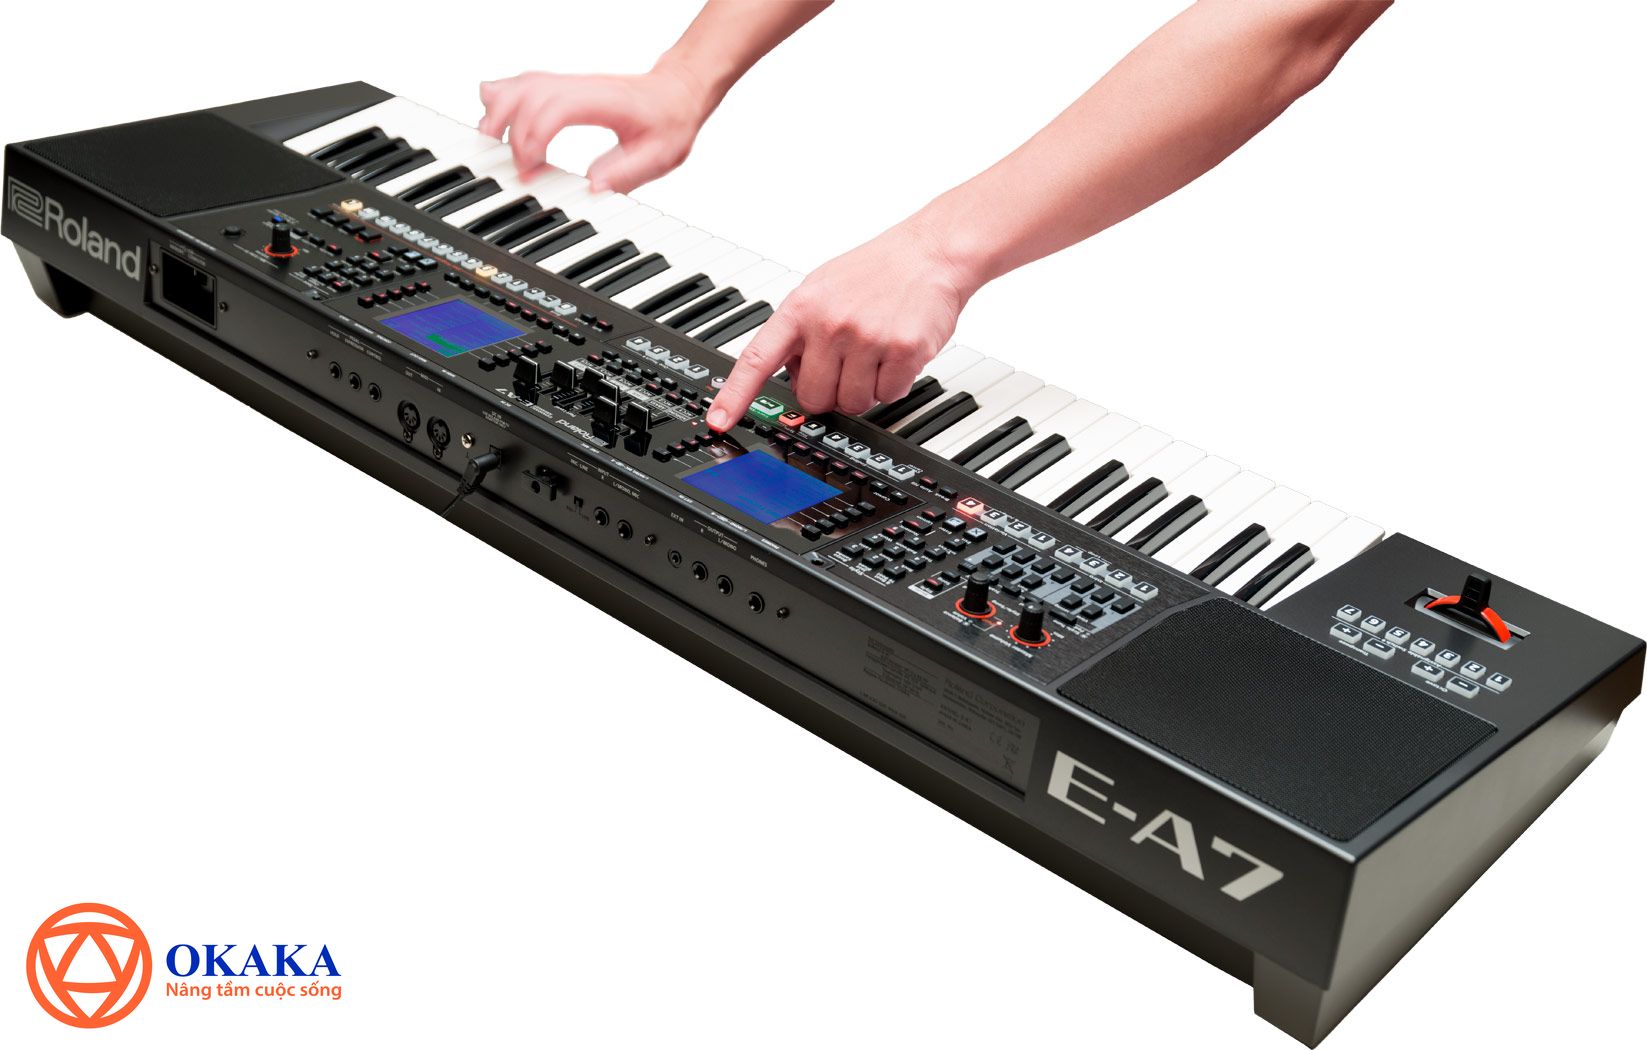  Đàn Organ Roland E-A7, model mới nhất của Roland được rất nhiều nhạc công nổi tiếng thế giới đánh giá cao, rất đáng để bạn cân nhắc.